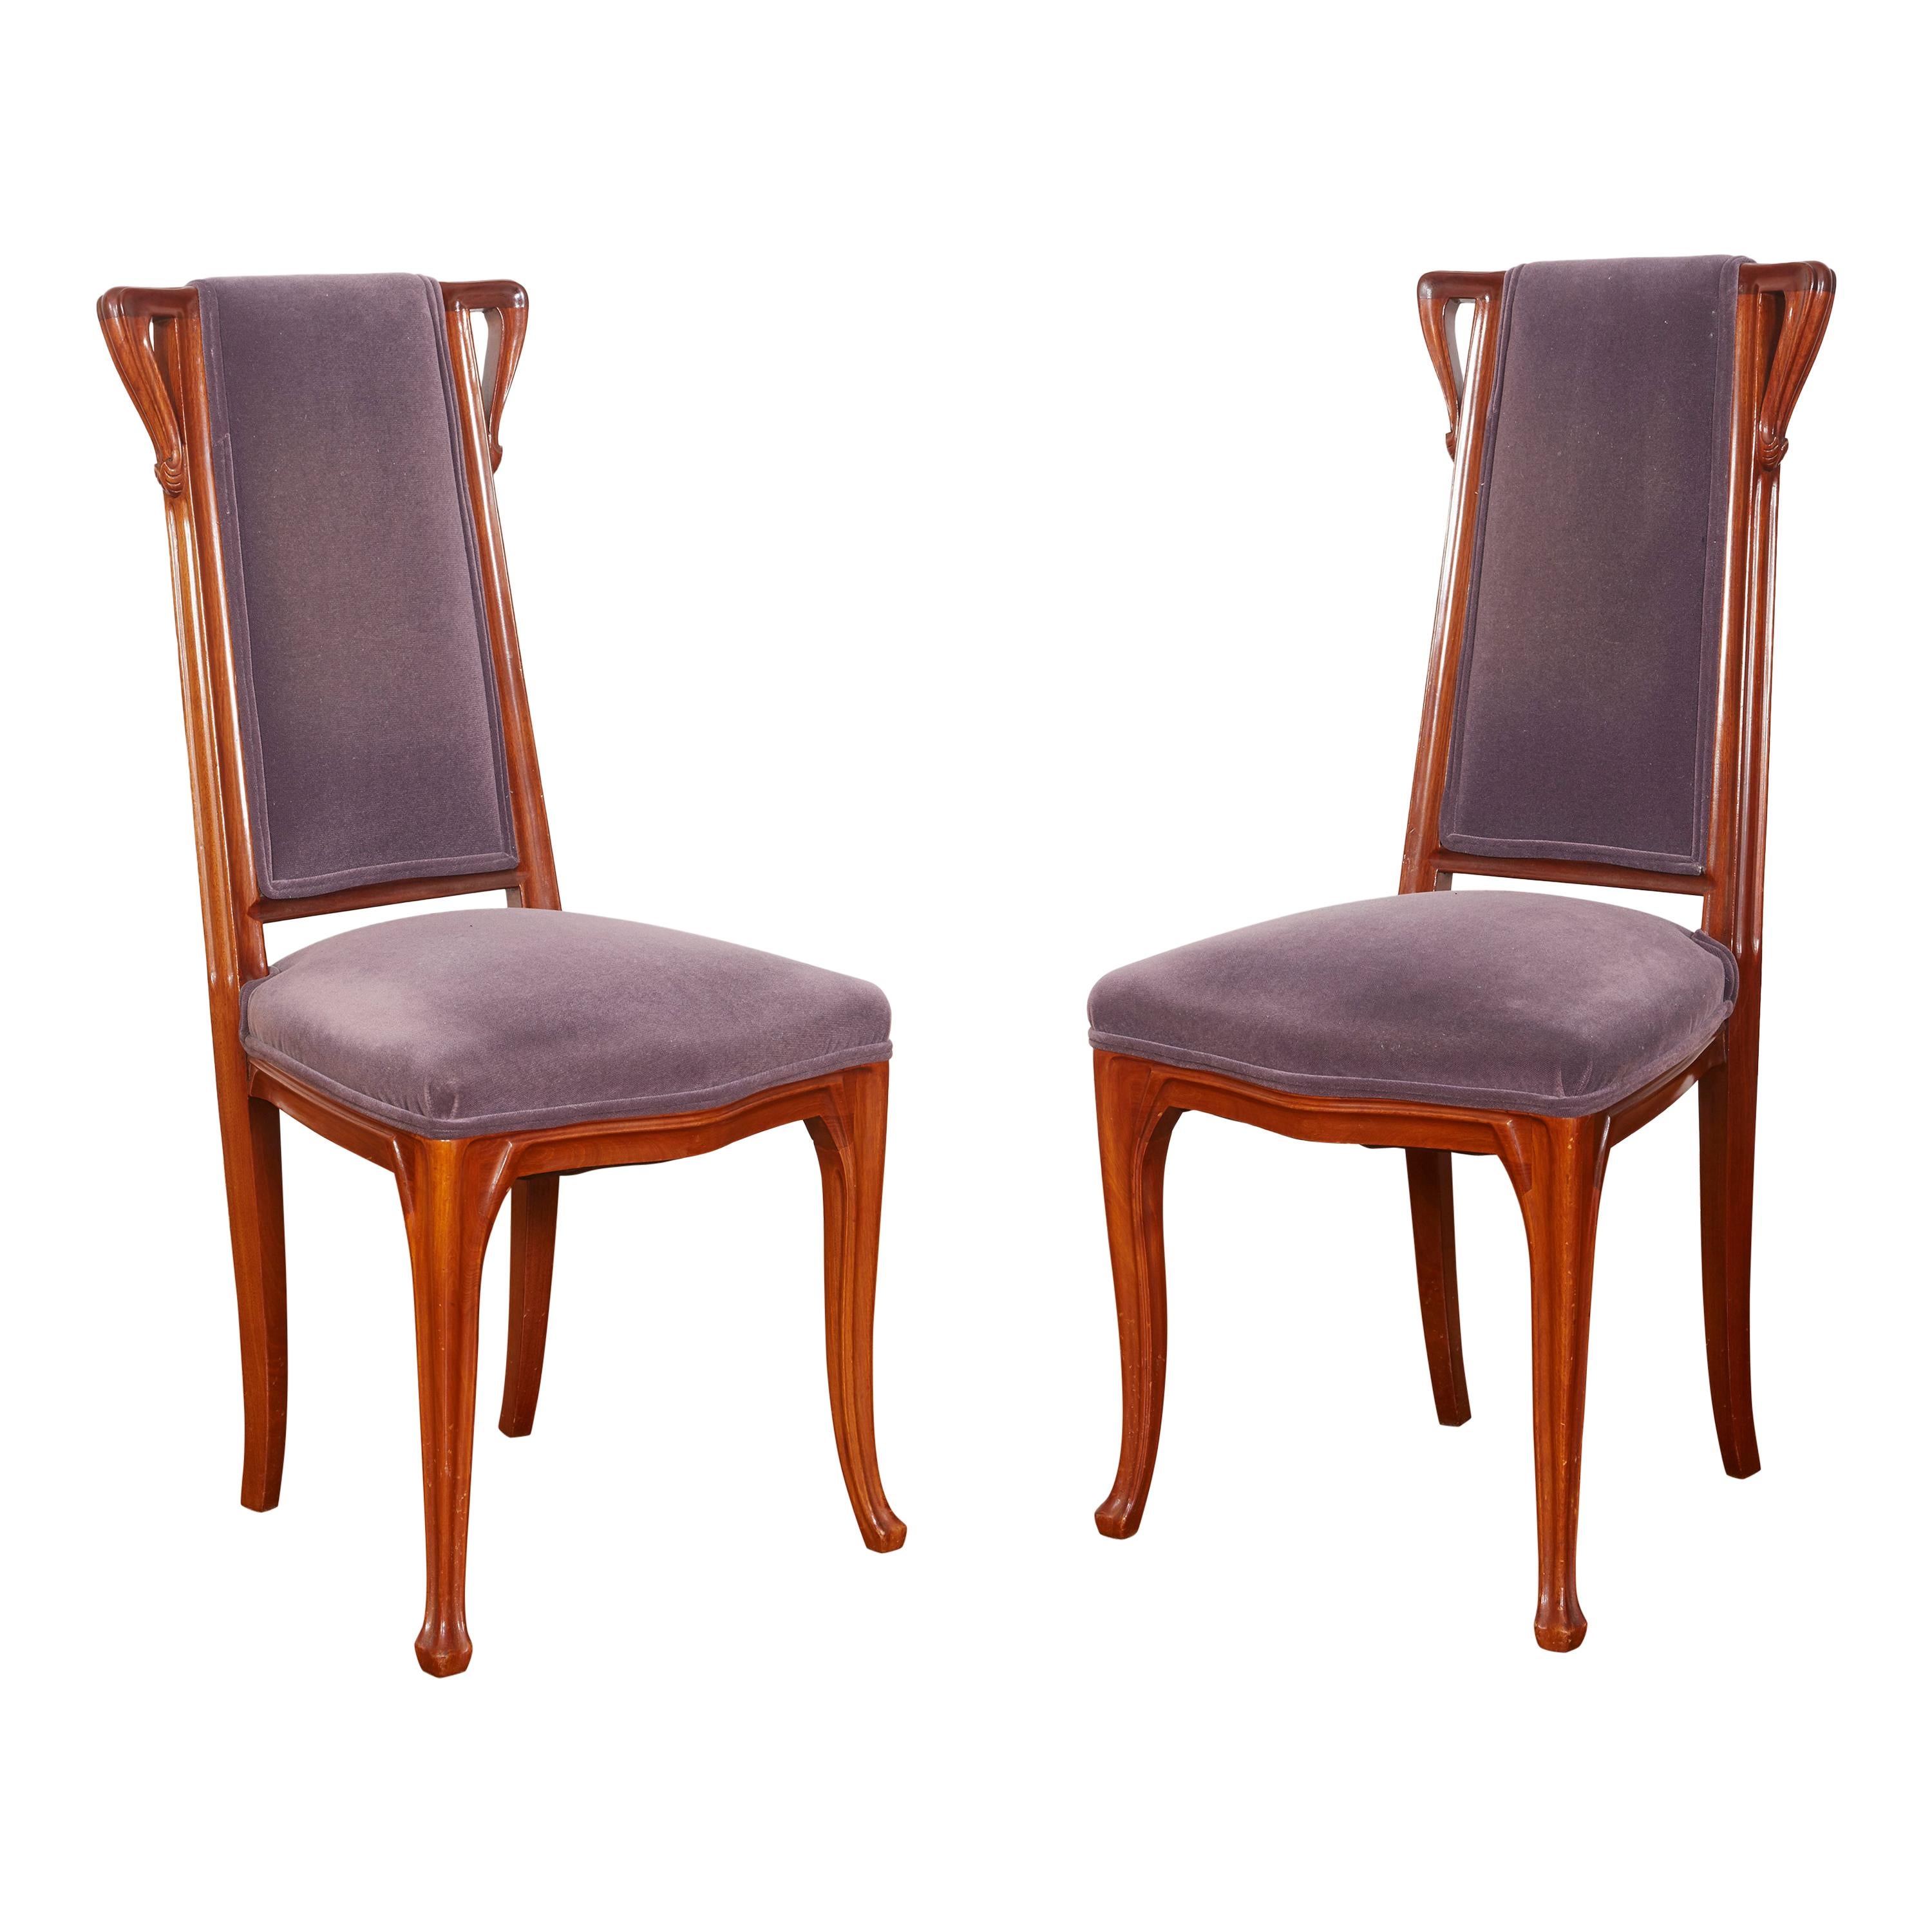 Paire de chaises Louis Majorelle de style Art nouveau français